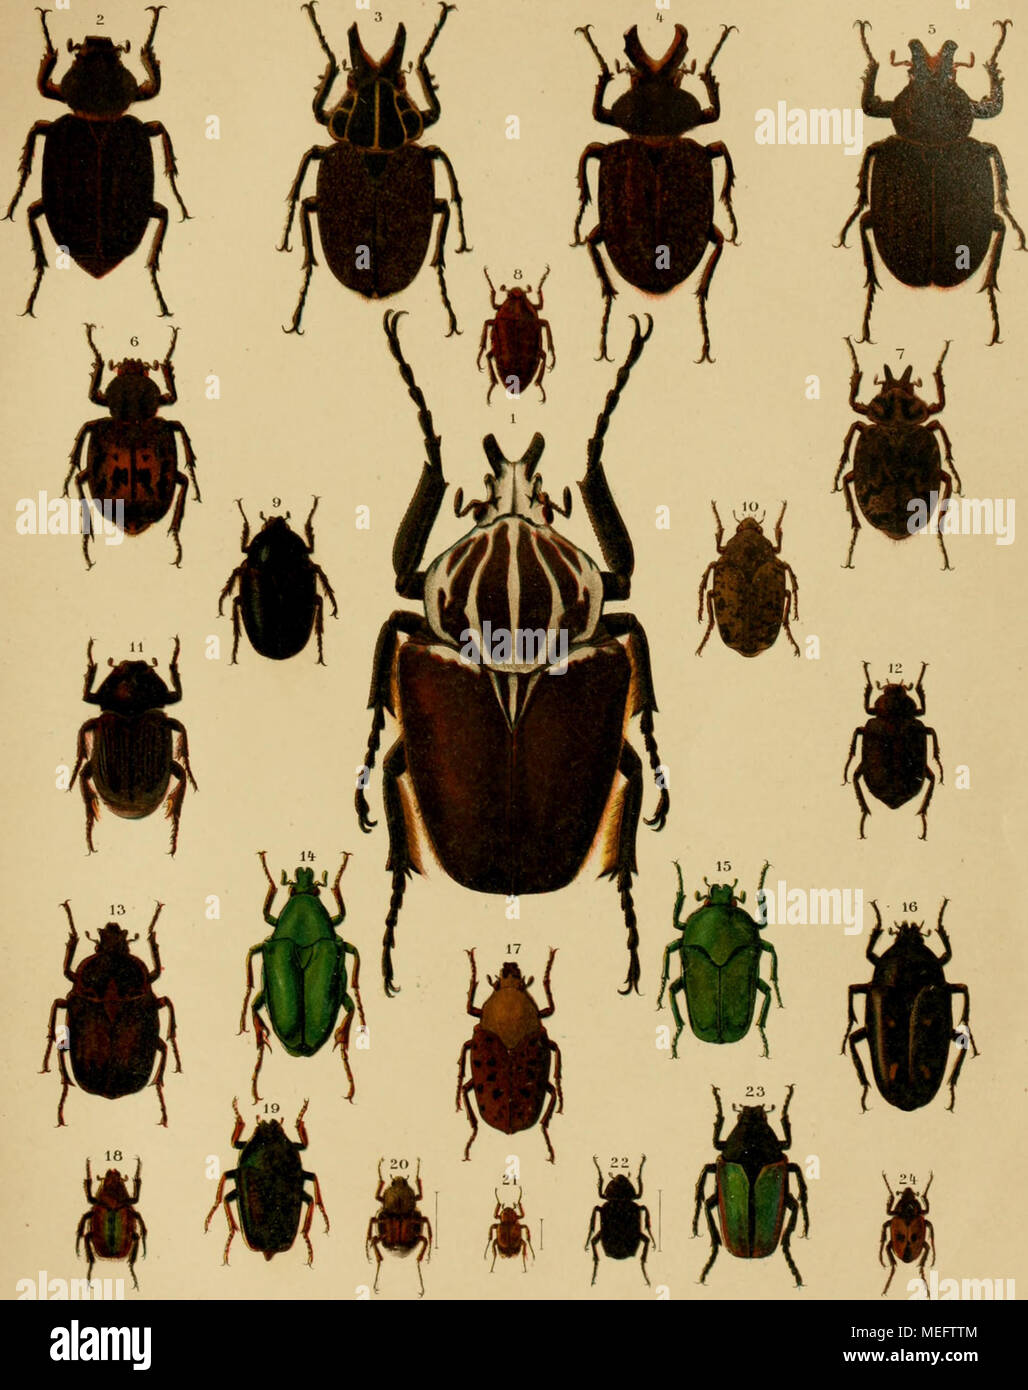 . Die exotischen Käfer in Wort und Bild . 1. Ooliathus giganteus. 2. lnca pulverulentus 9- 3. I. clathratus &lt;$. 4. I. besckii $. 5. I. burmeisteri g. 6. I. irroratus $• 7. I. bon- plandi rj. 8. Macroma cognata. 9. Diplognatha silicea. 10. Pseudinca admixlus. 11. Platygenia barbata. 12. Osmoderma scabra. 13. Bothrorrhina reflexa {. 14. Pseudochalcothea auripes. 15. Ischiopsopha Iucivorax. 16. Clerota budda. 17. Conradtia principalis. 18. Stegopterus suturalis. 19. Mycterophallus dichropus. 20. Trichius piger. 21. Comythovalgus fasciculatus. 22. Cremastochilus castaneae. 23. Eccoptocnemis rel Stock Photo